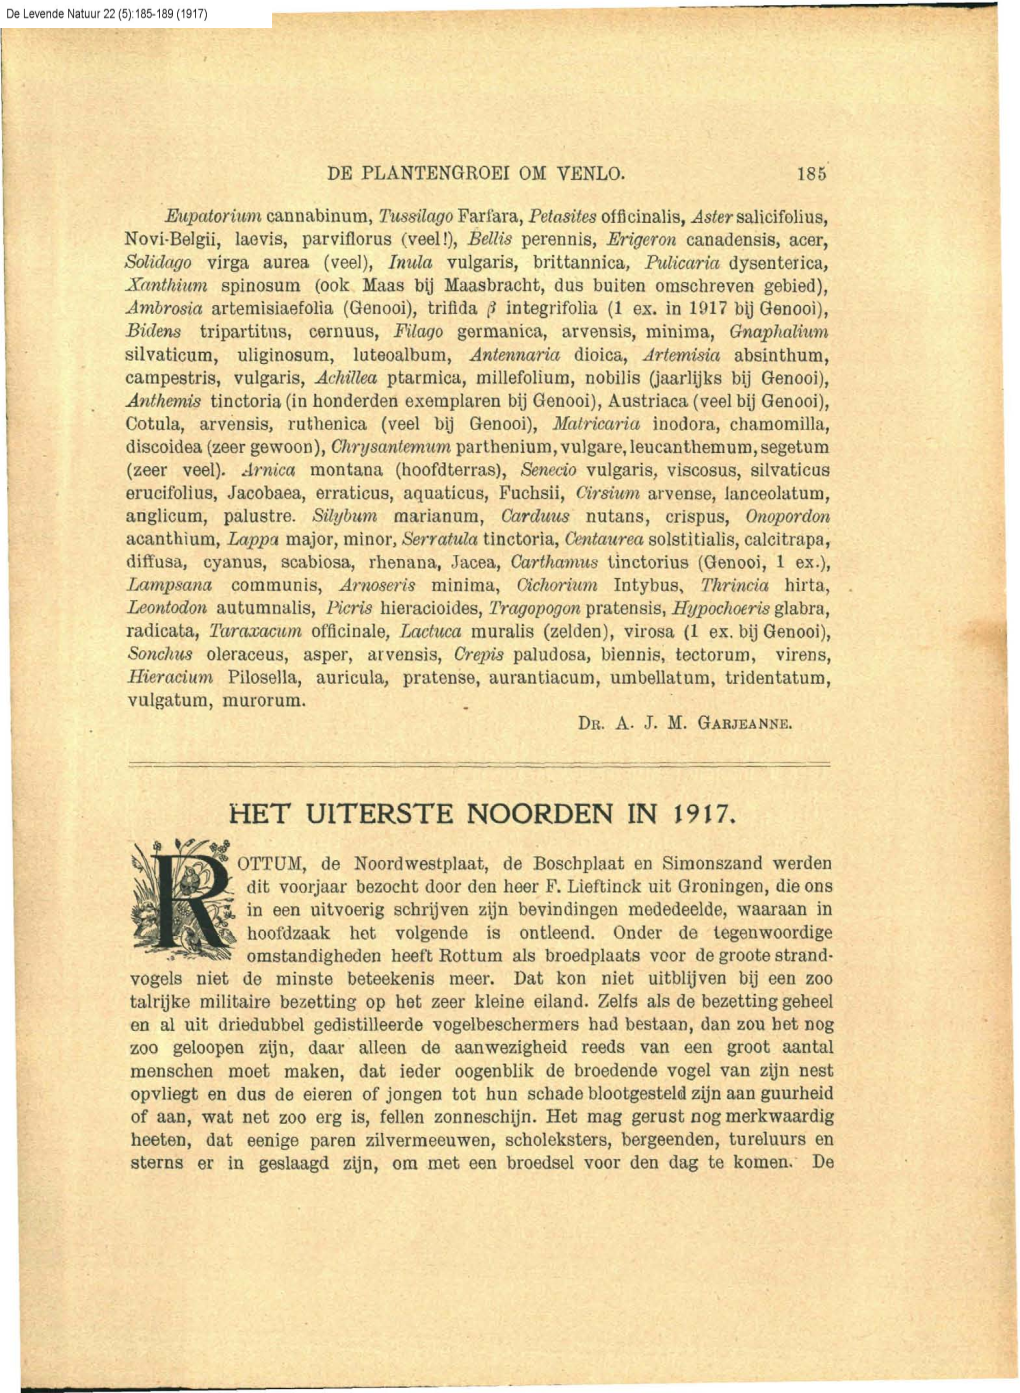 Thijsse, J.P. (1917) Het Uiterste Noorden in 1917. (Rottum